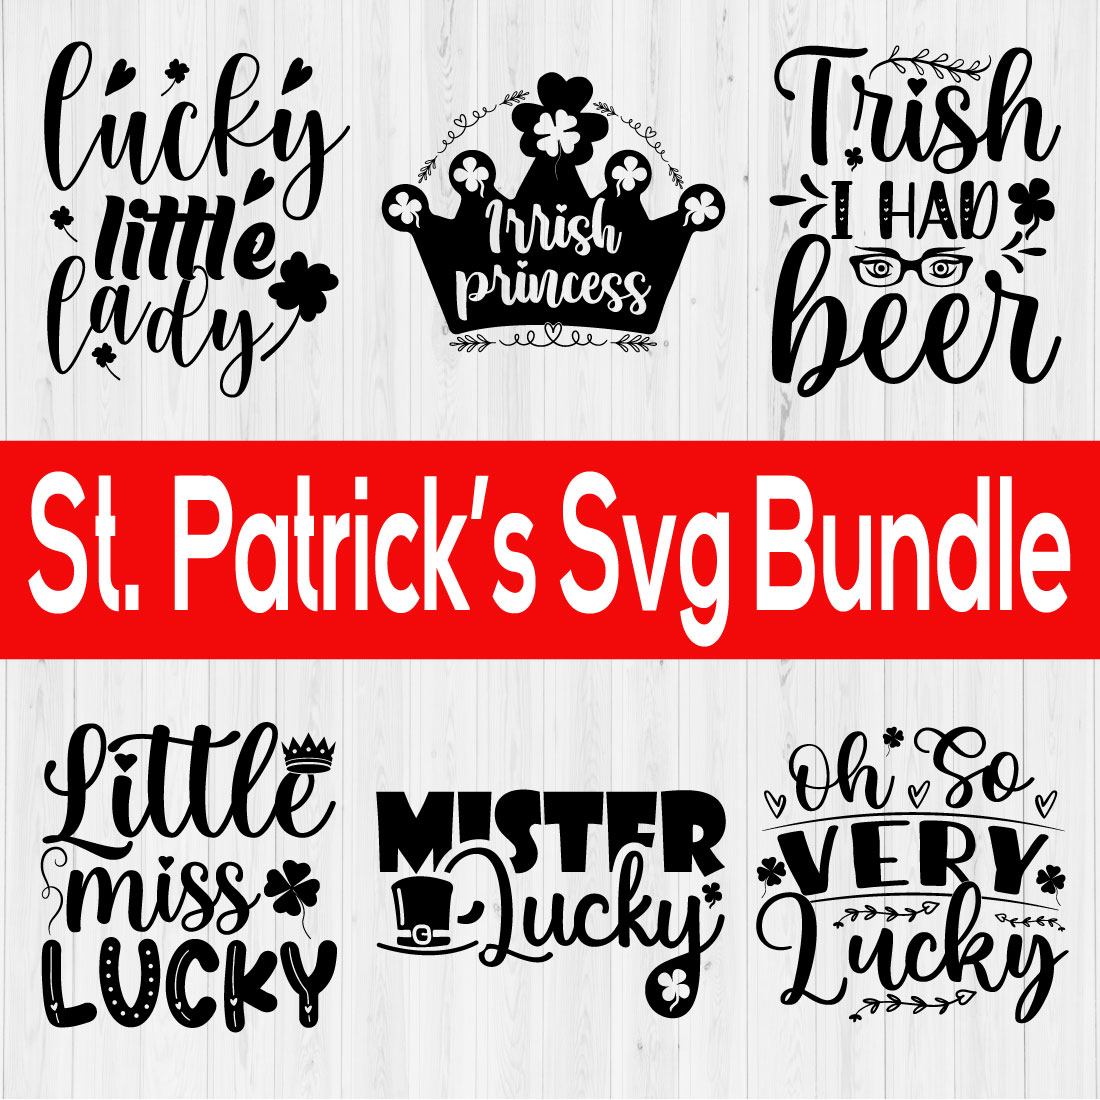 St Patrick's Svg Bundle Vol1 cover image.